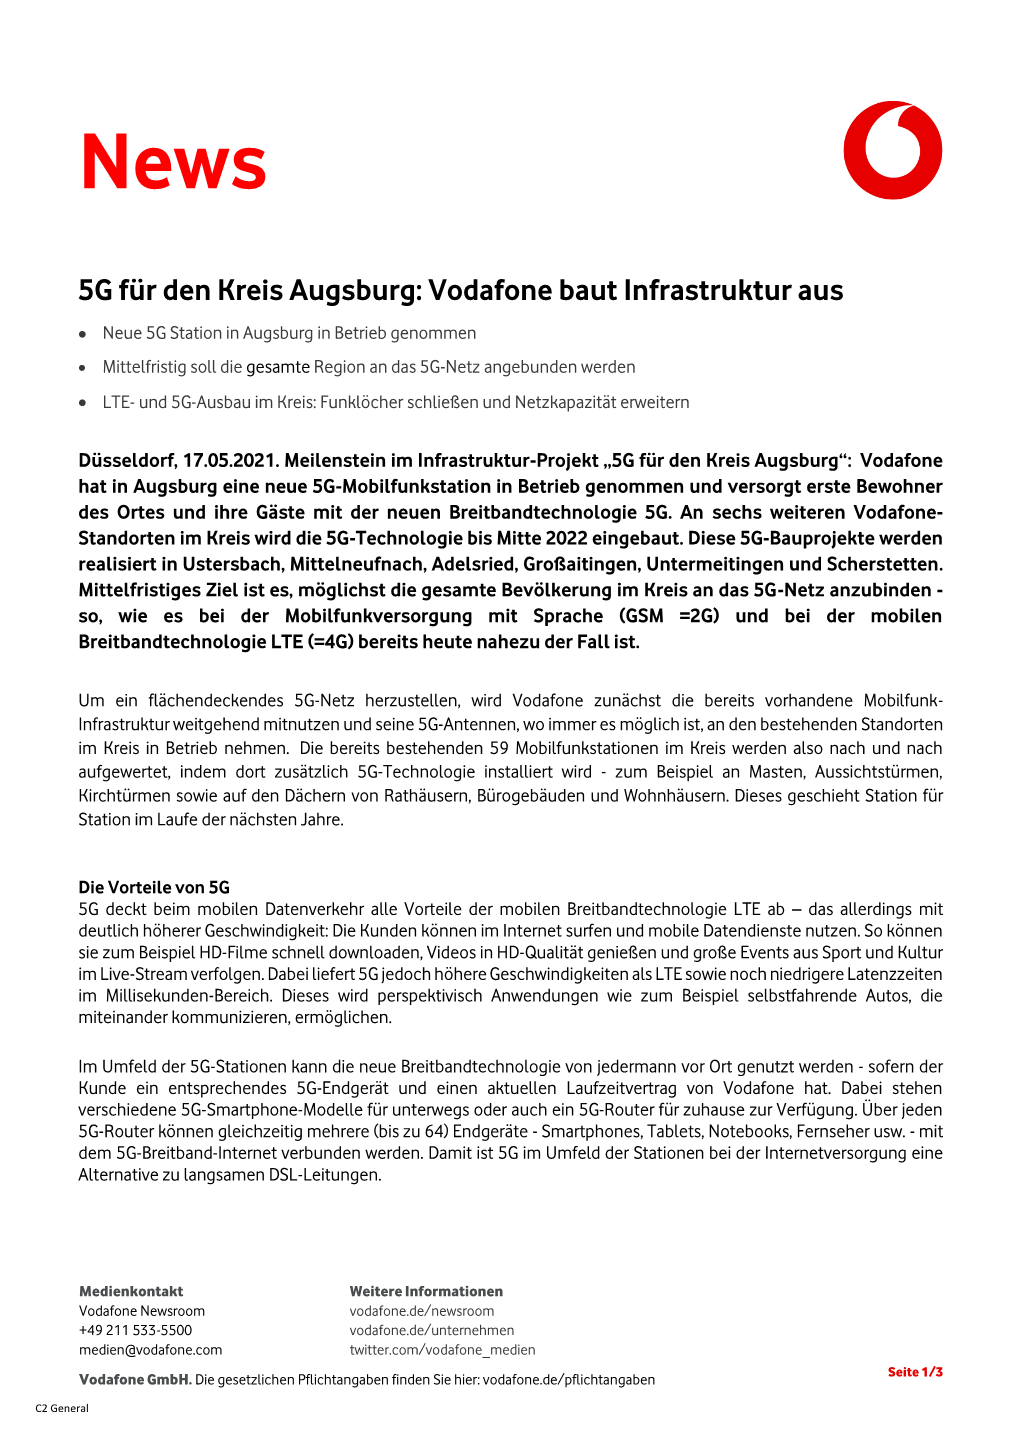 5G Für Den Kreis Augsburg: Vodafone Baut